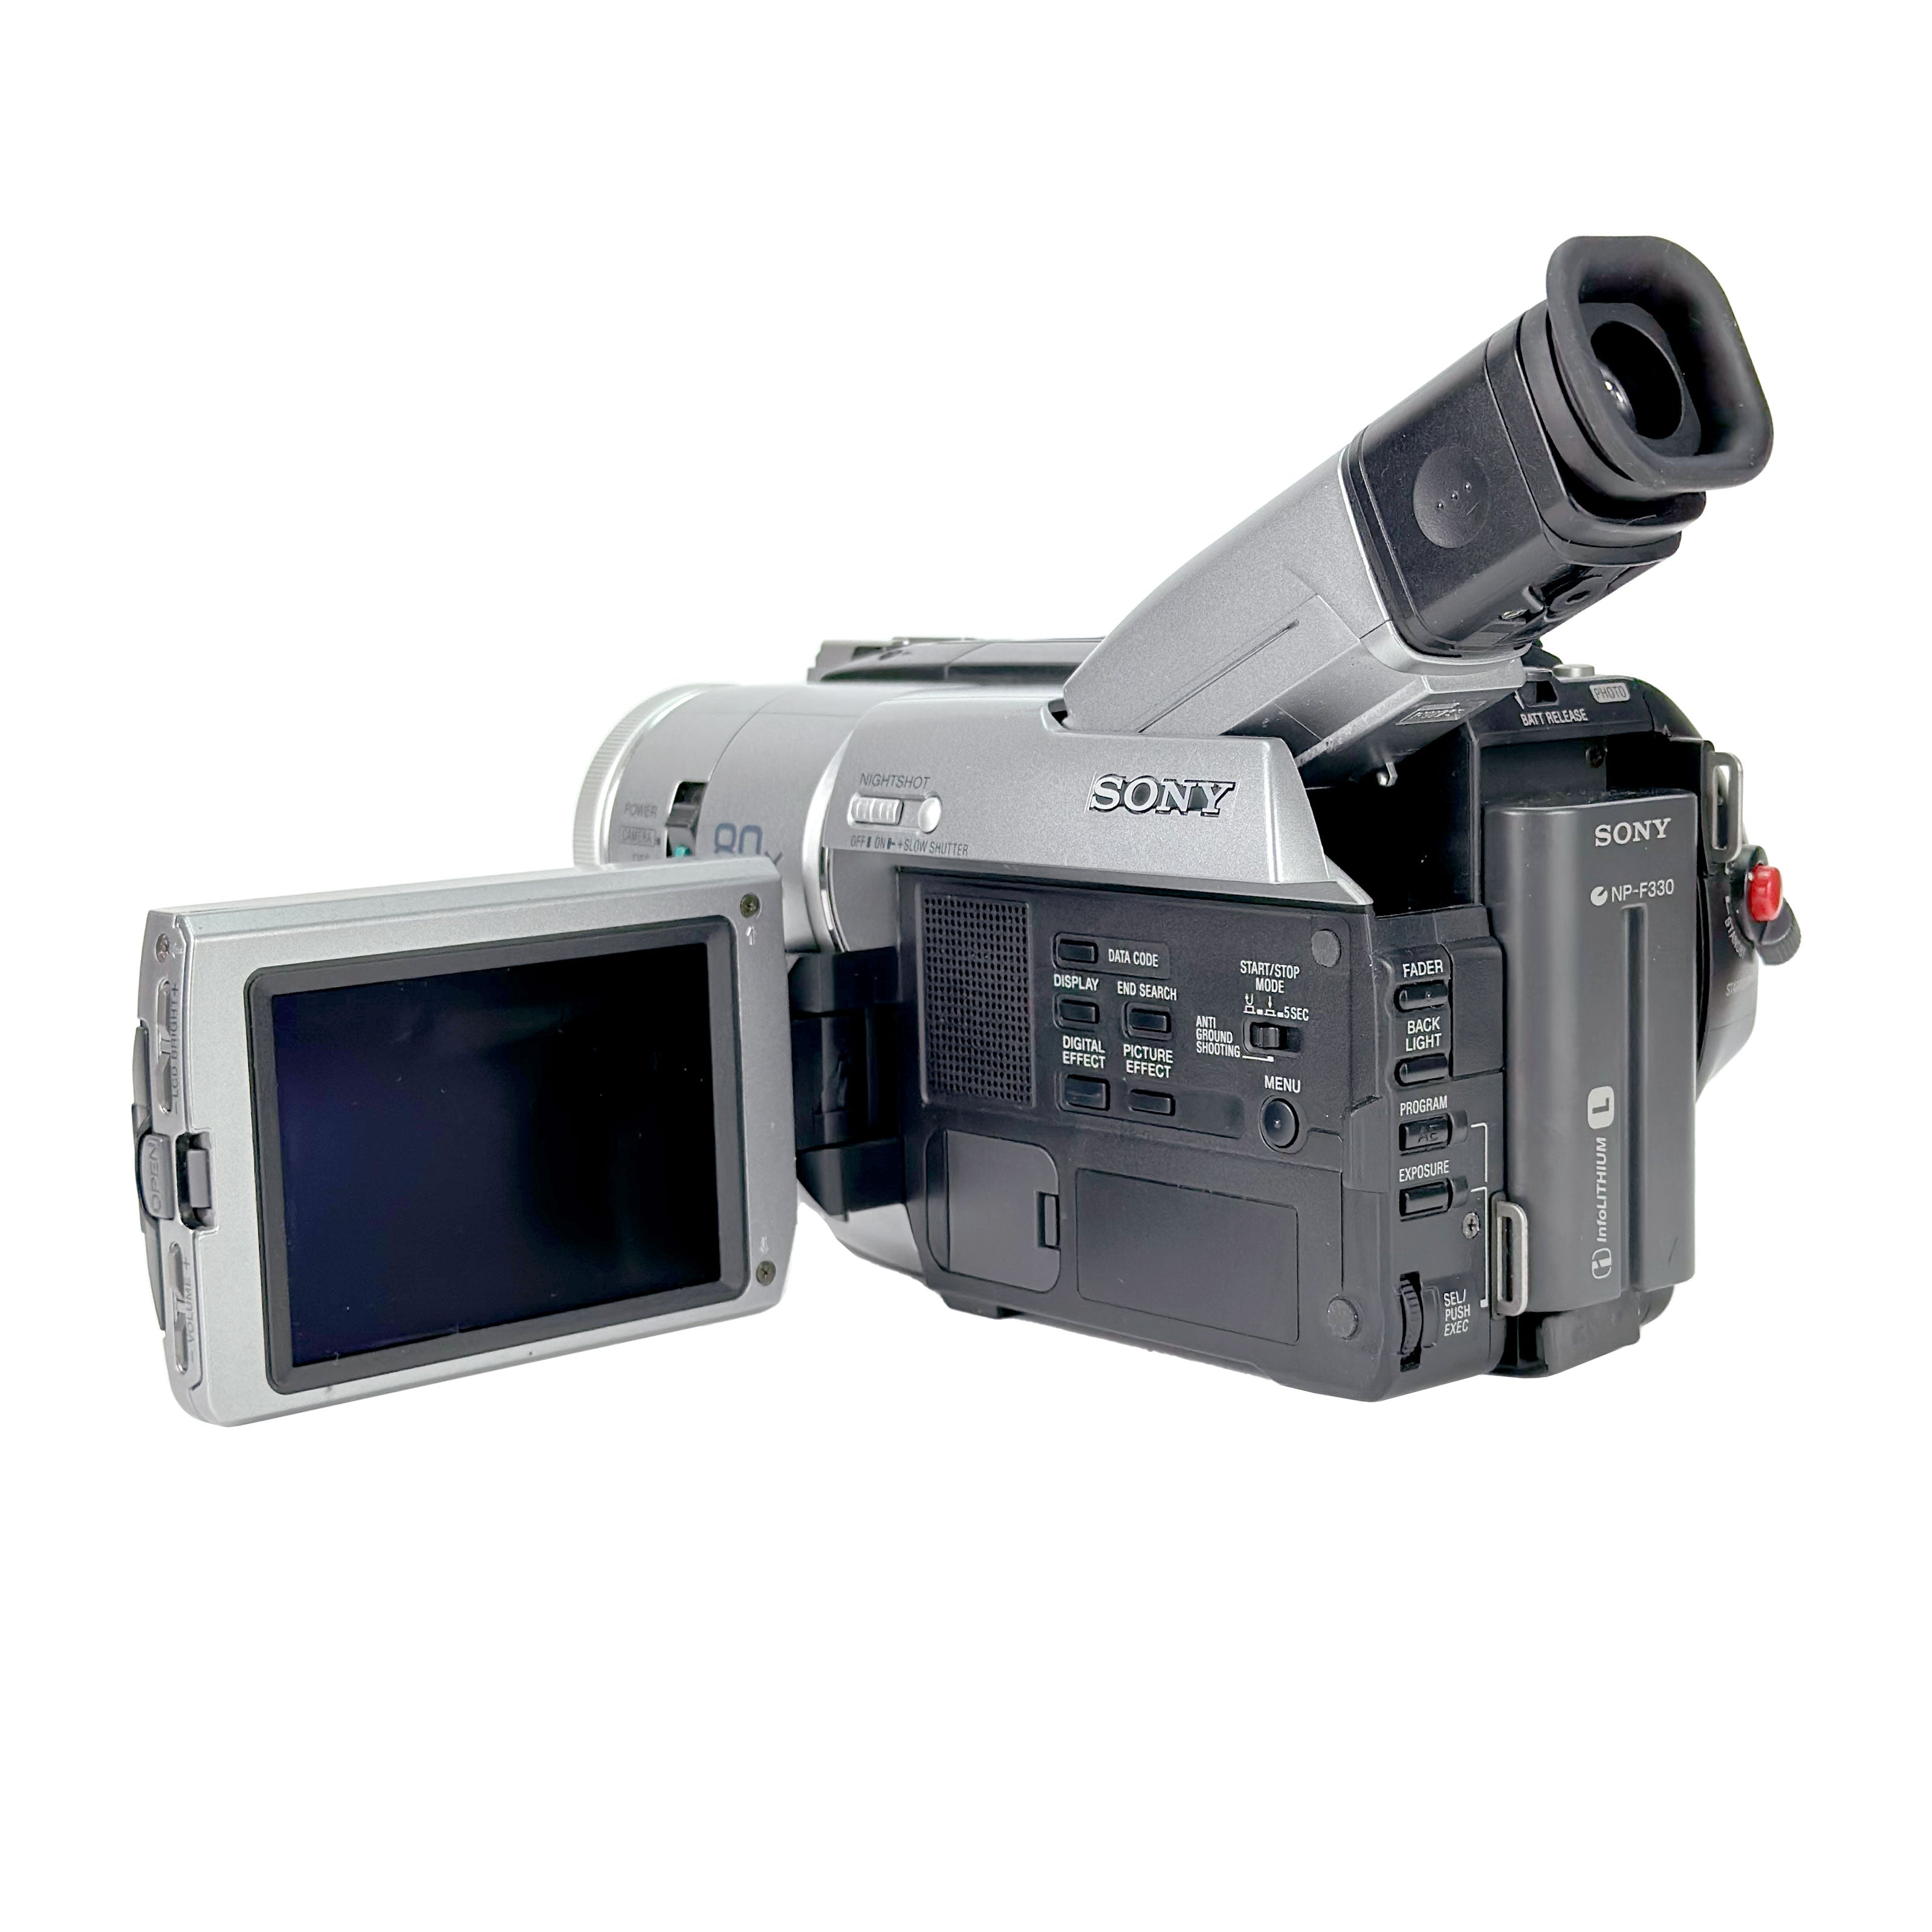 Sony Handycam DCR-TRV310E PAL Hi8 Digital Camcorder – Retro Camera